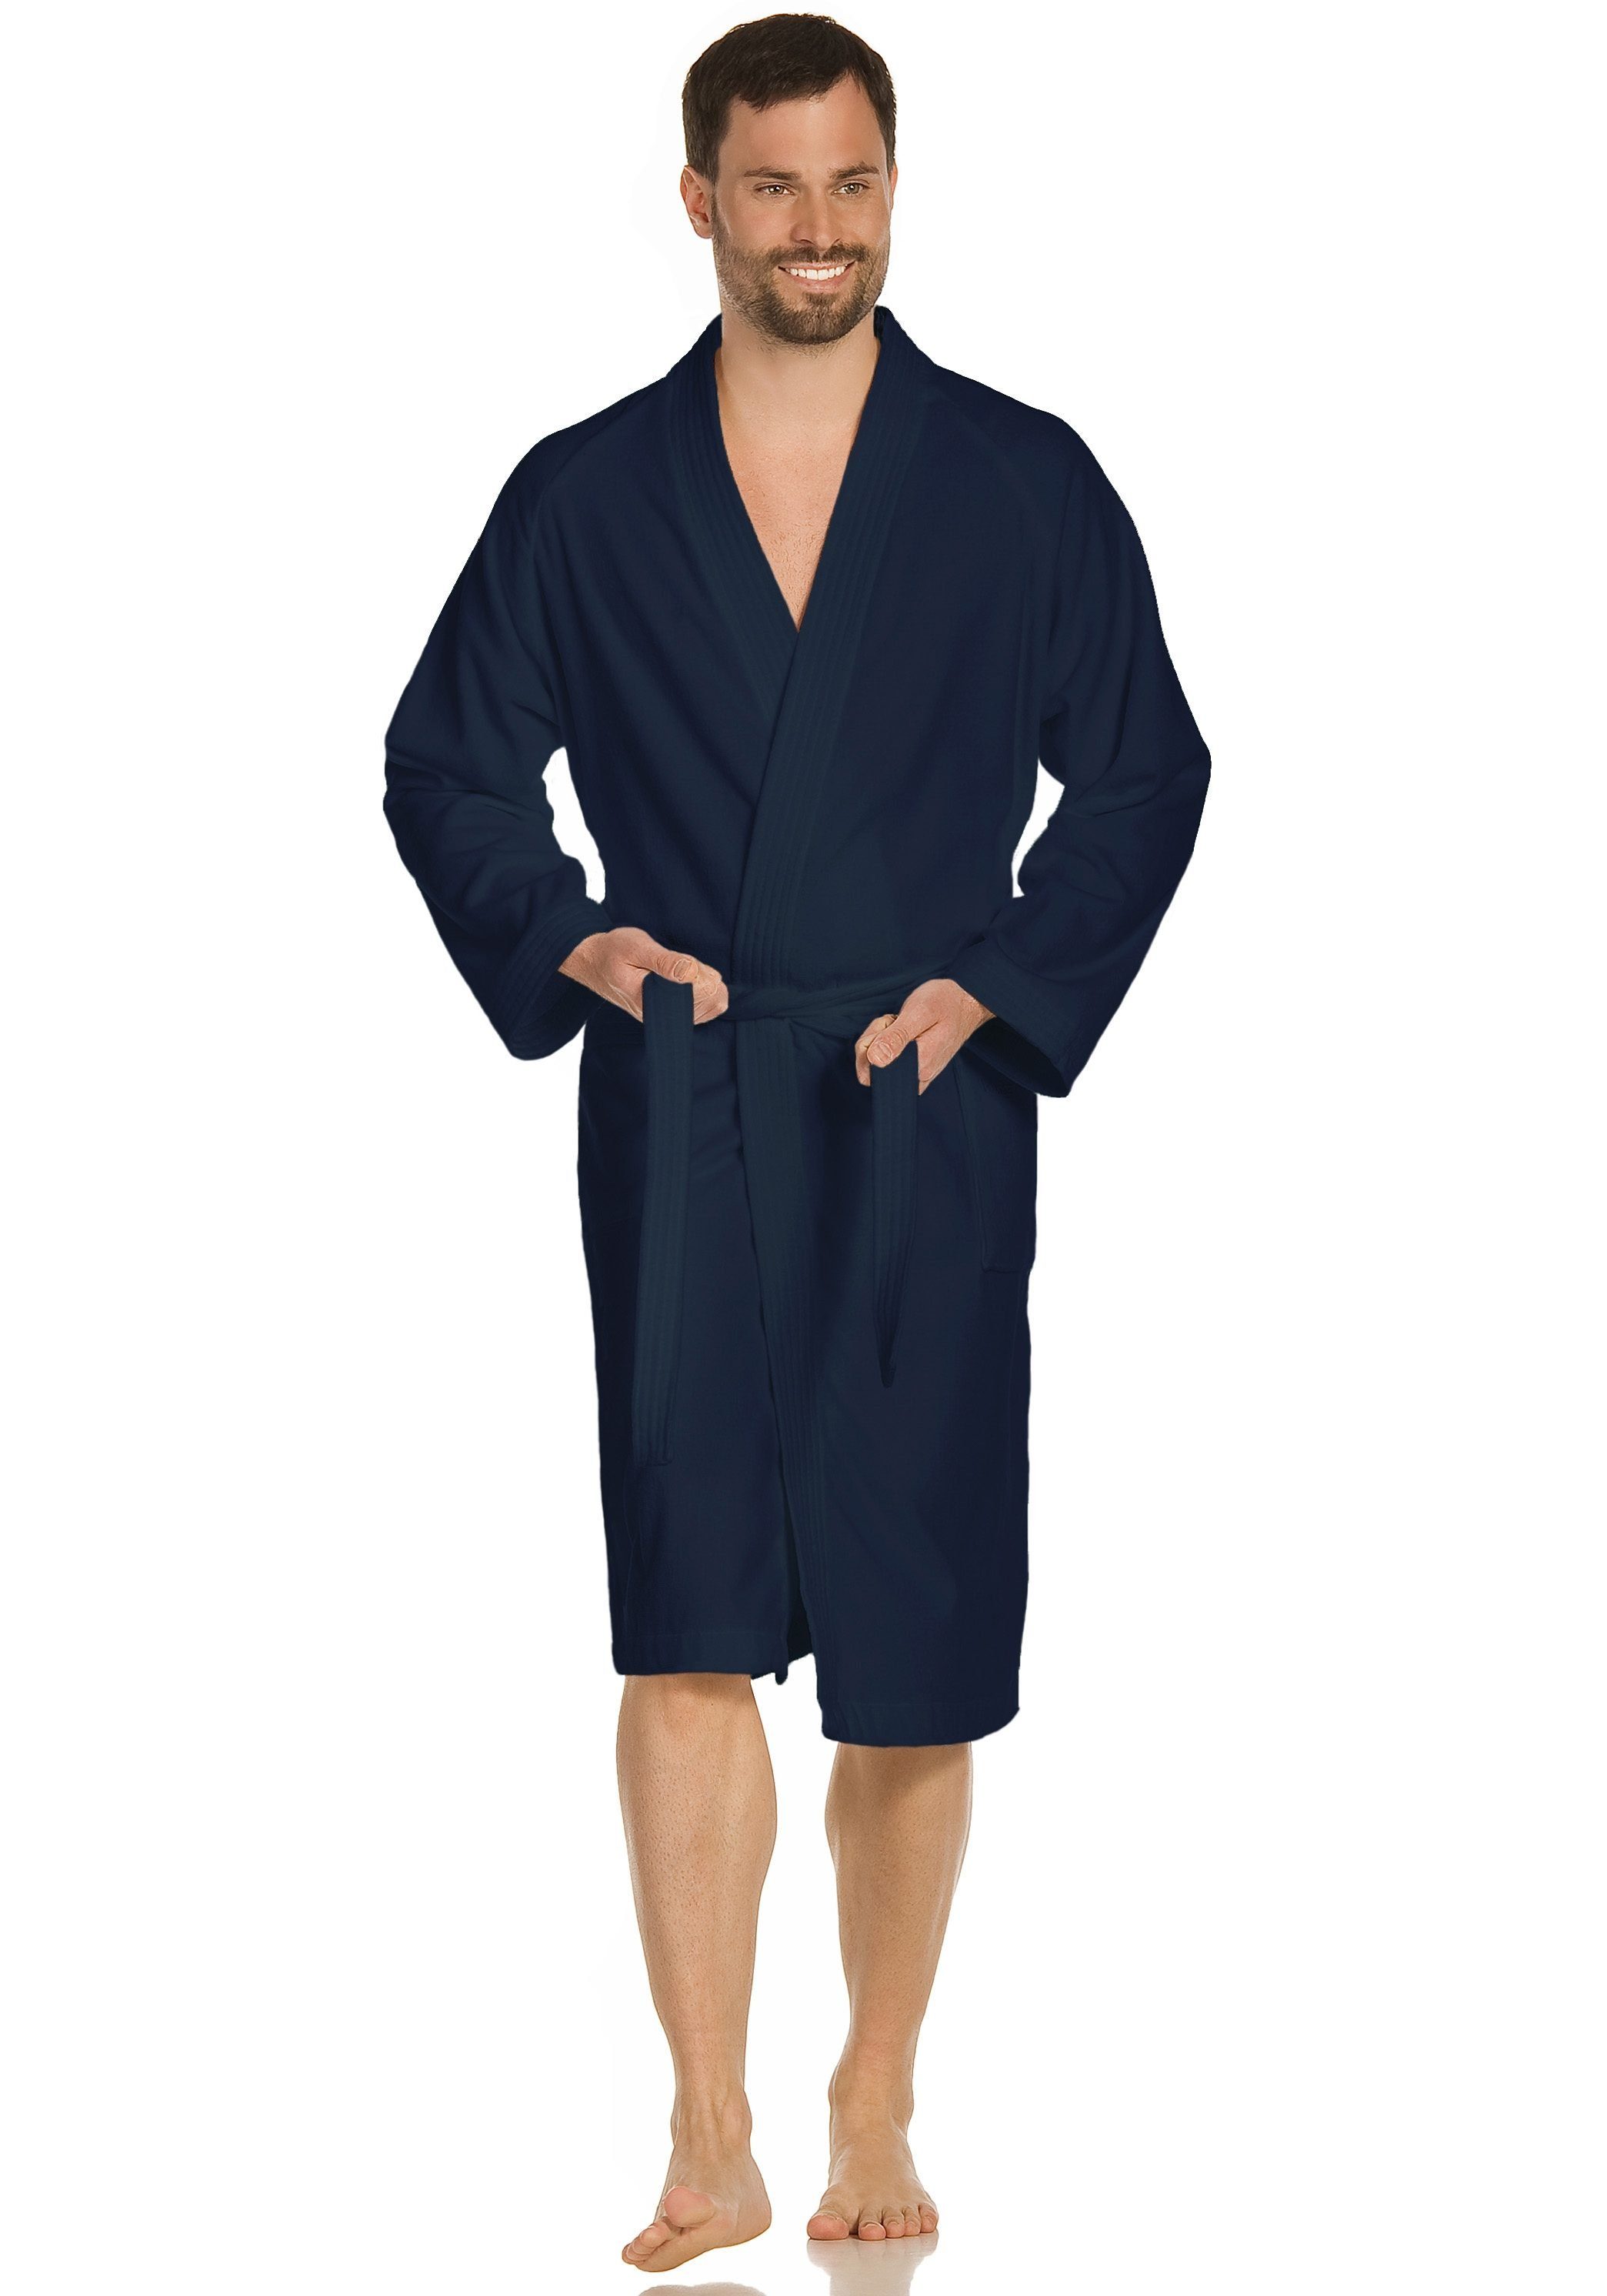 Vossen Dallas, & Kimono-Kragen reine Damen mit Unisex-Bademantel Gürtel, dunkelblau für Kimono-Kragen, Webvelours, Baumwolle, Kurzform, Herren,